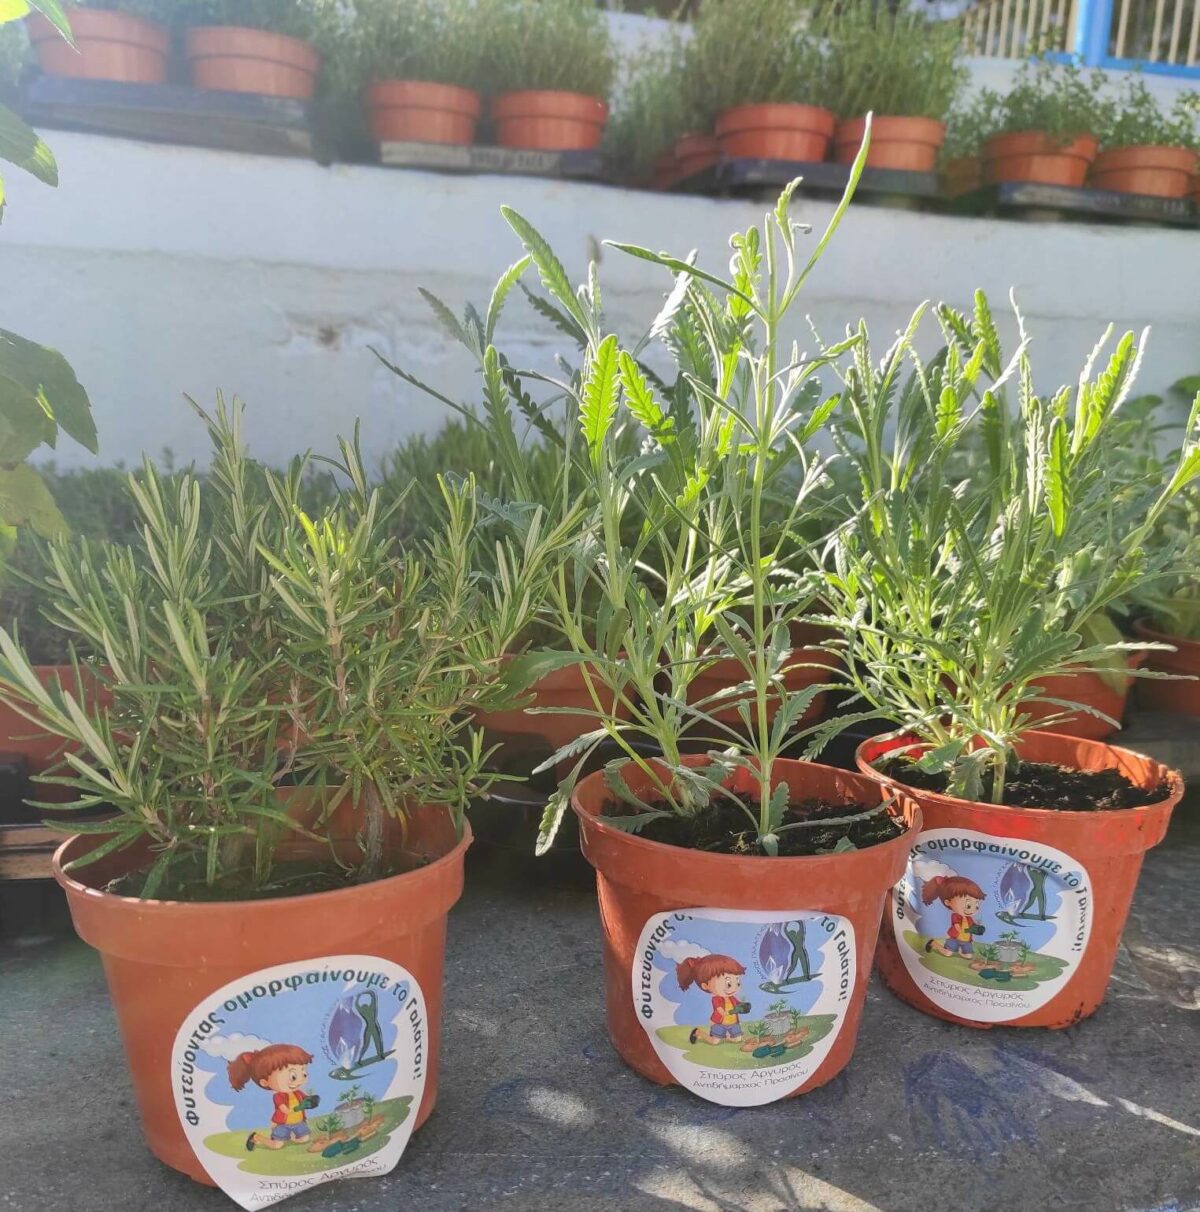 Ο Δήμος Γαλατσίου μοίρασε γλαστράκια με αρωματικά – καλλωπιστικά φυτά και σπόρους, στο πλαίσιο της Παγκόσμιας Ημέρας Περιβάλλοντος